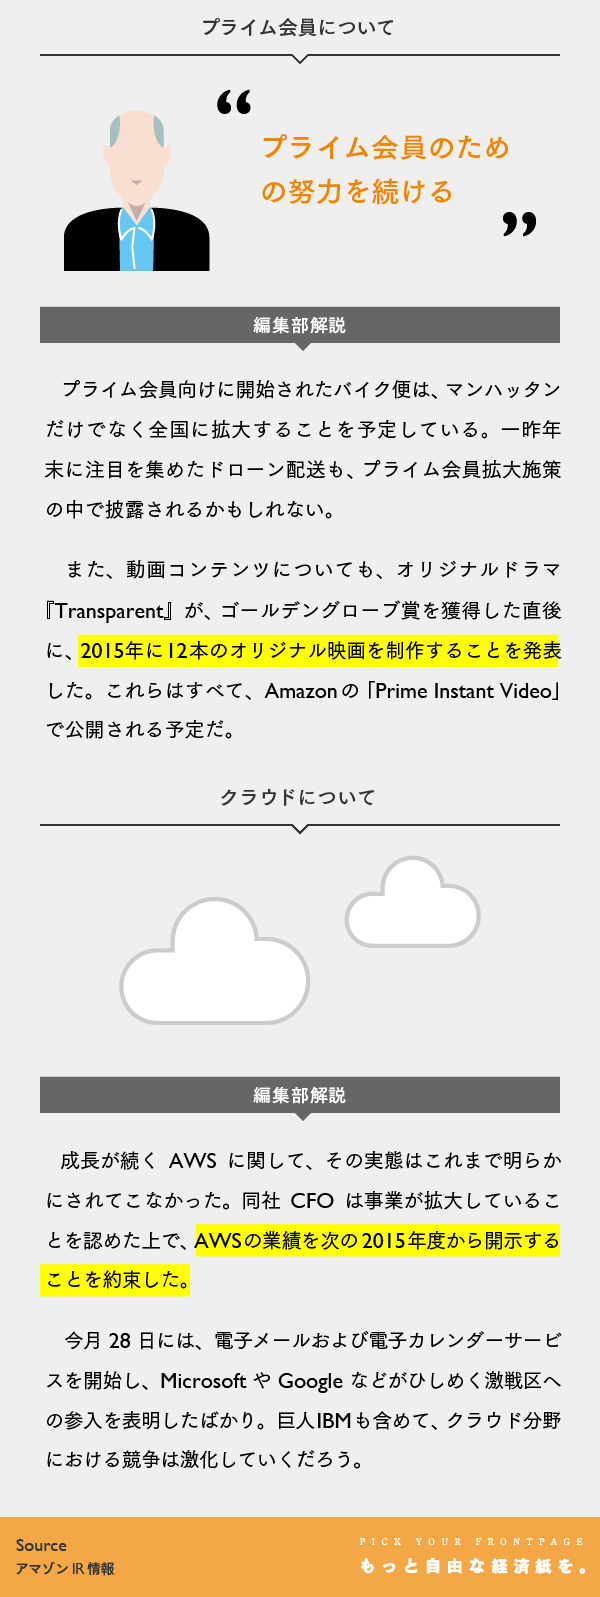 【マスター】Amazonビジュアルレポート_20150130-06